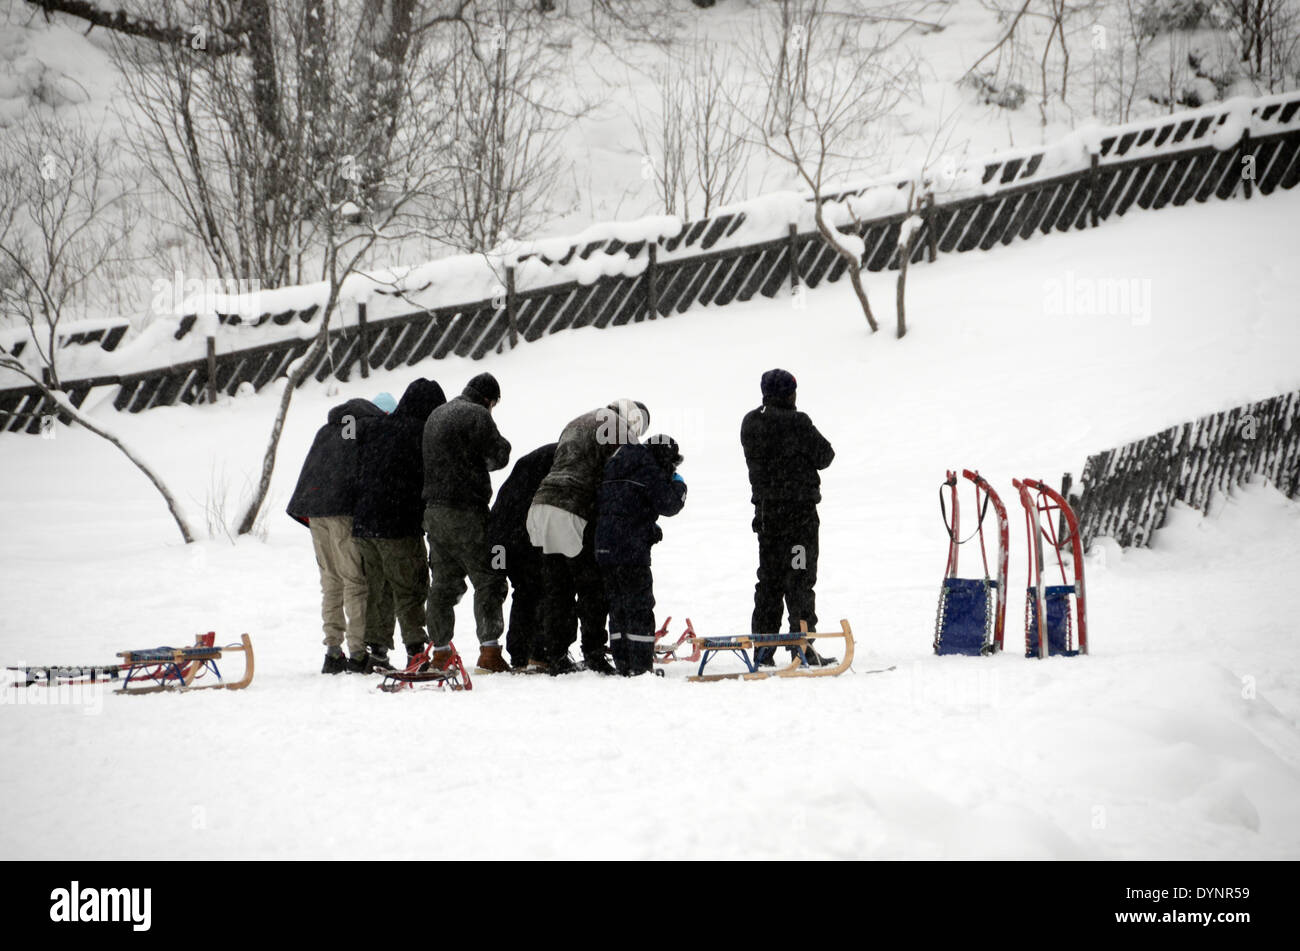 Gli immigrati musulmani in Norvegia la preghiera verso la mecca nella neve in occasione di una visita a nordmarka, al di fuori della capitale oslo, Norvegia Foto Stock